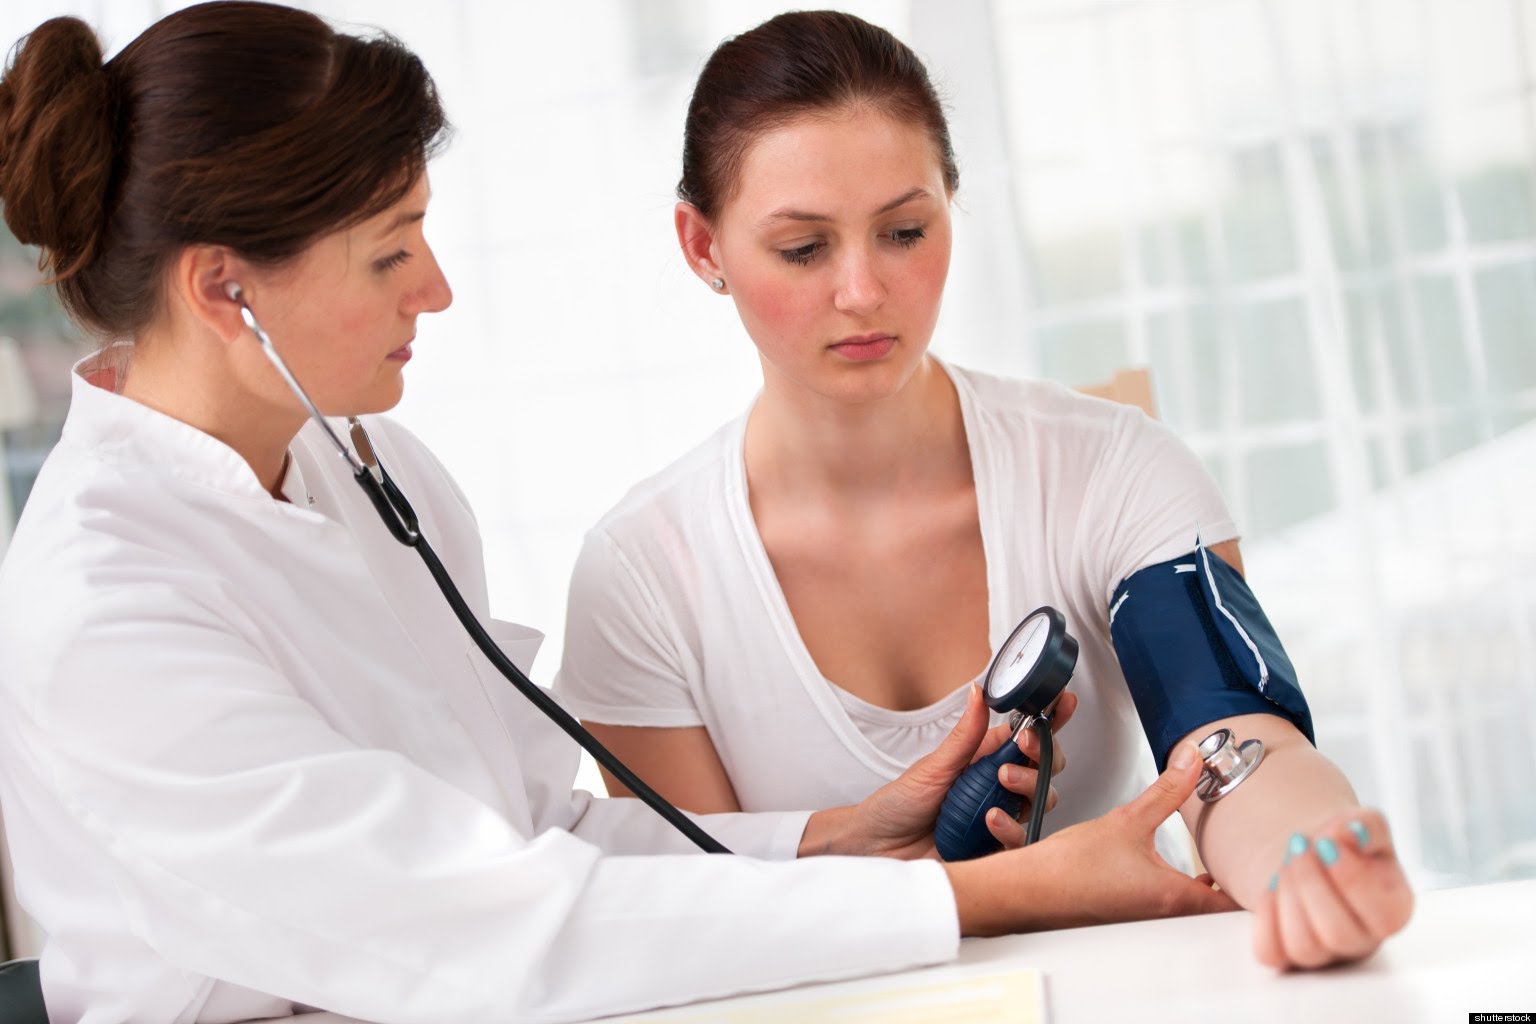 دراسة: أدوية ارتفاع ضغط الدم تسبب اضطرابات نفسية